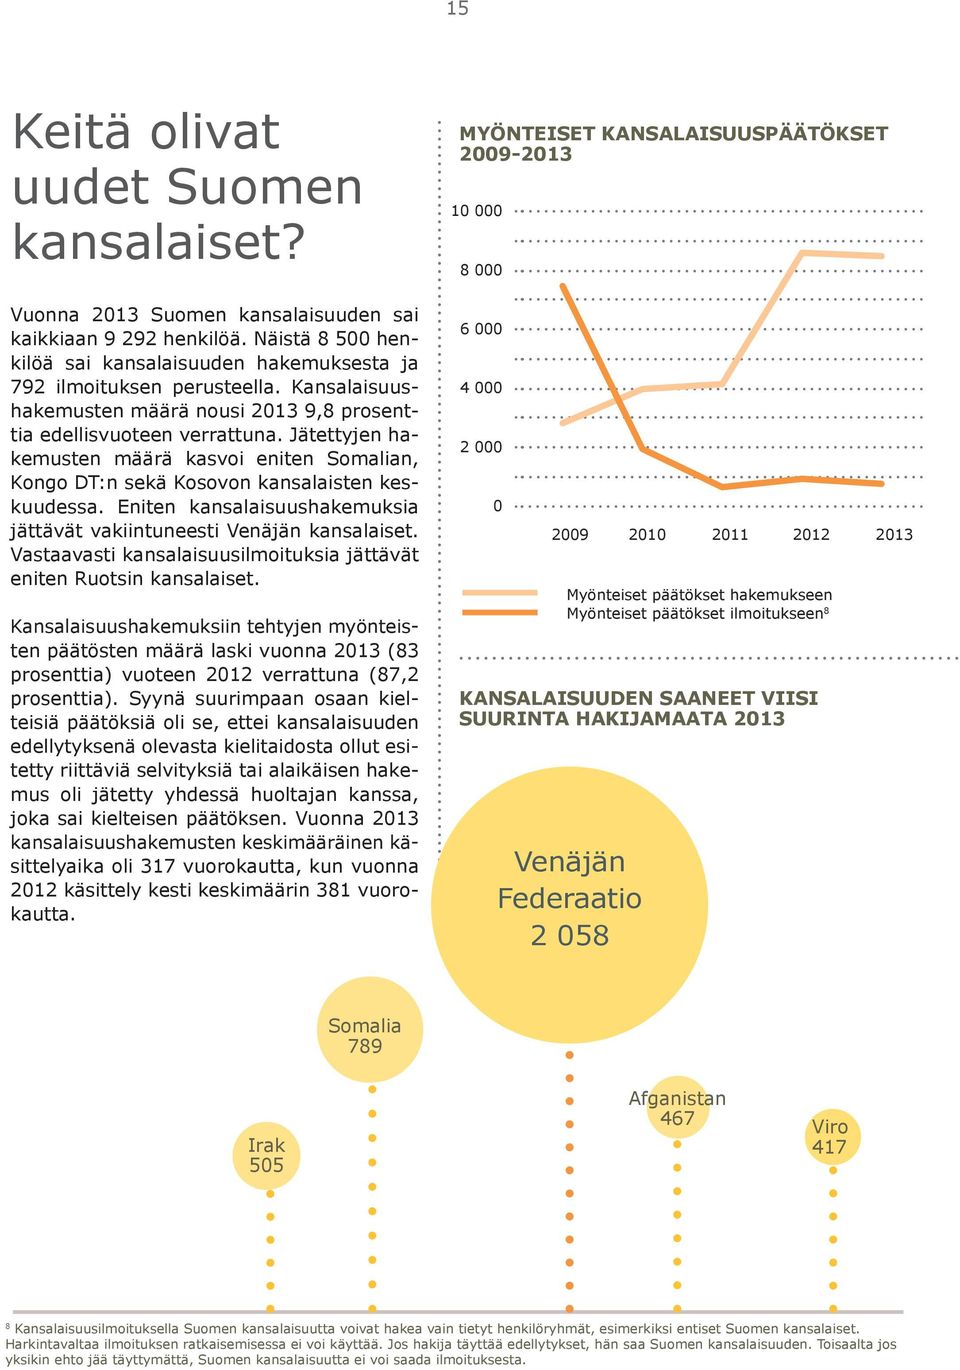 Eniten kansalaisuushakemuksia jättävät vakiintuneesti Venäjän kansalaiset. Vastaavasti kansalaisuusilmoituksia jättävät eniten Ruotsin kansalaiset.